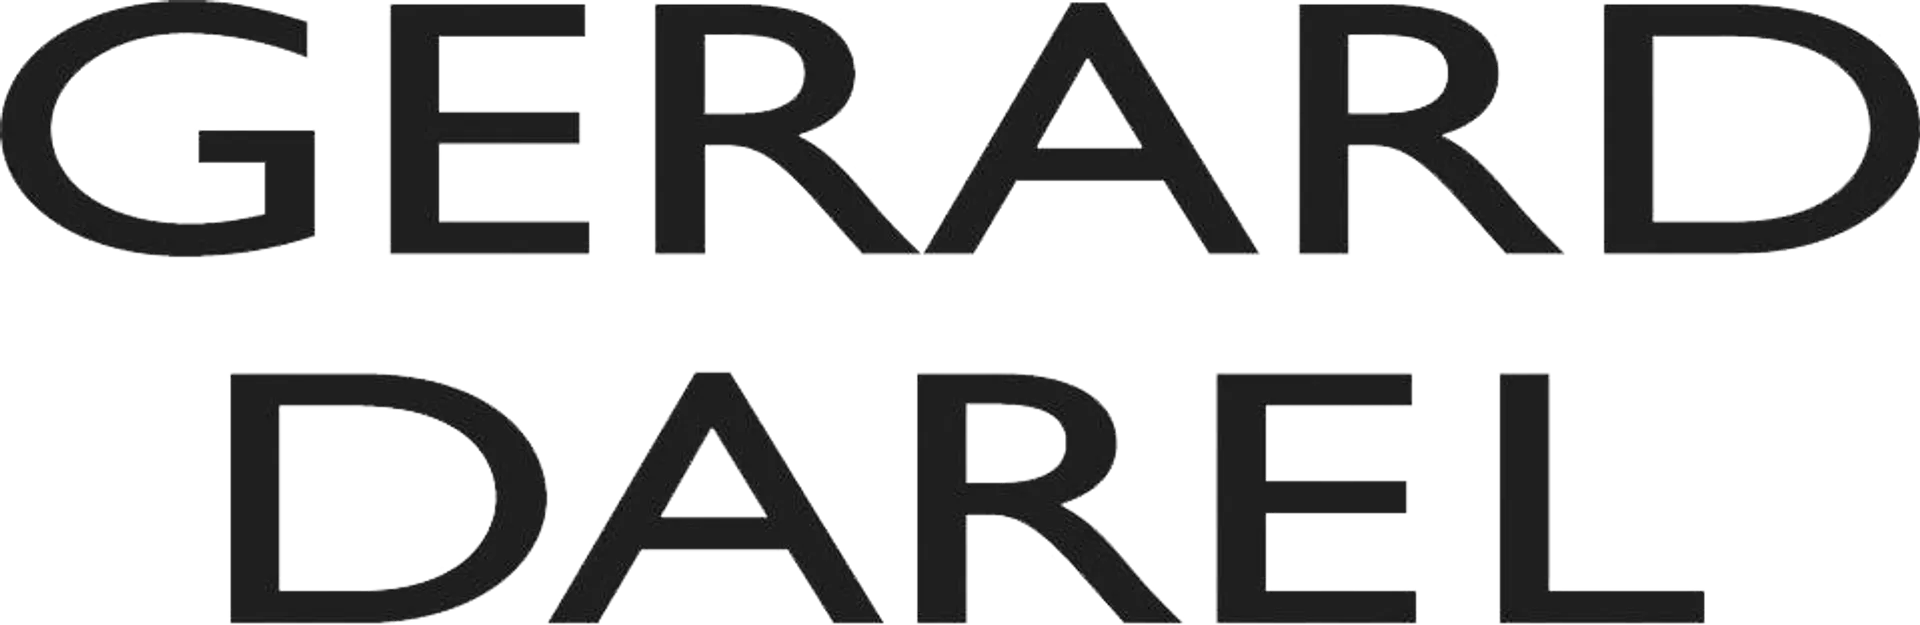 GERARD DAREL logo